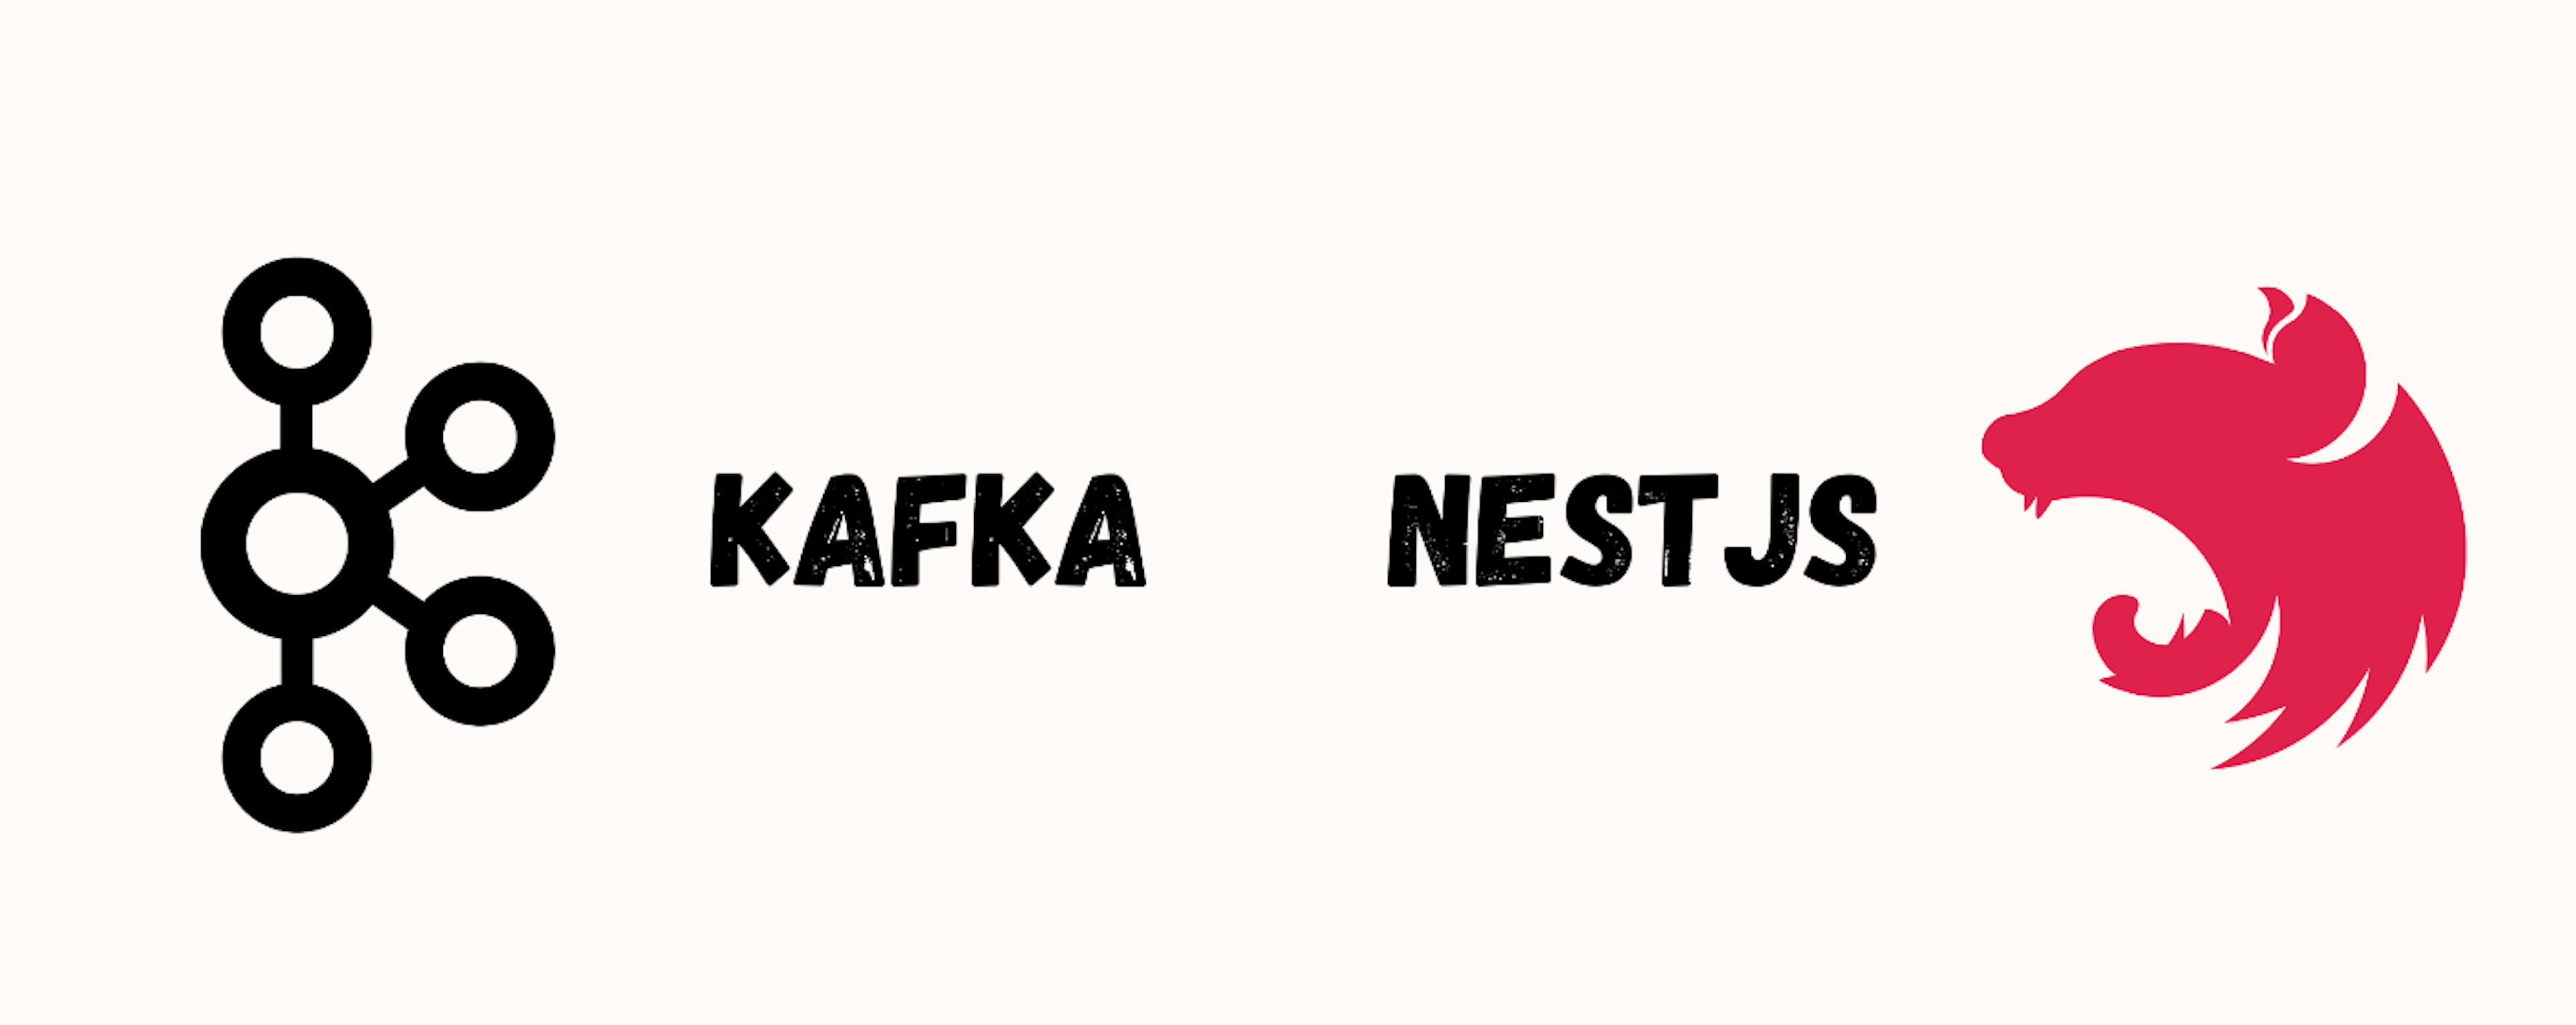 featured image - Как использовать сообщения Kafka с помощью NestJS